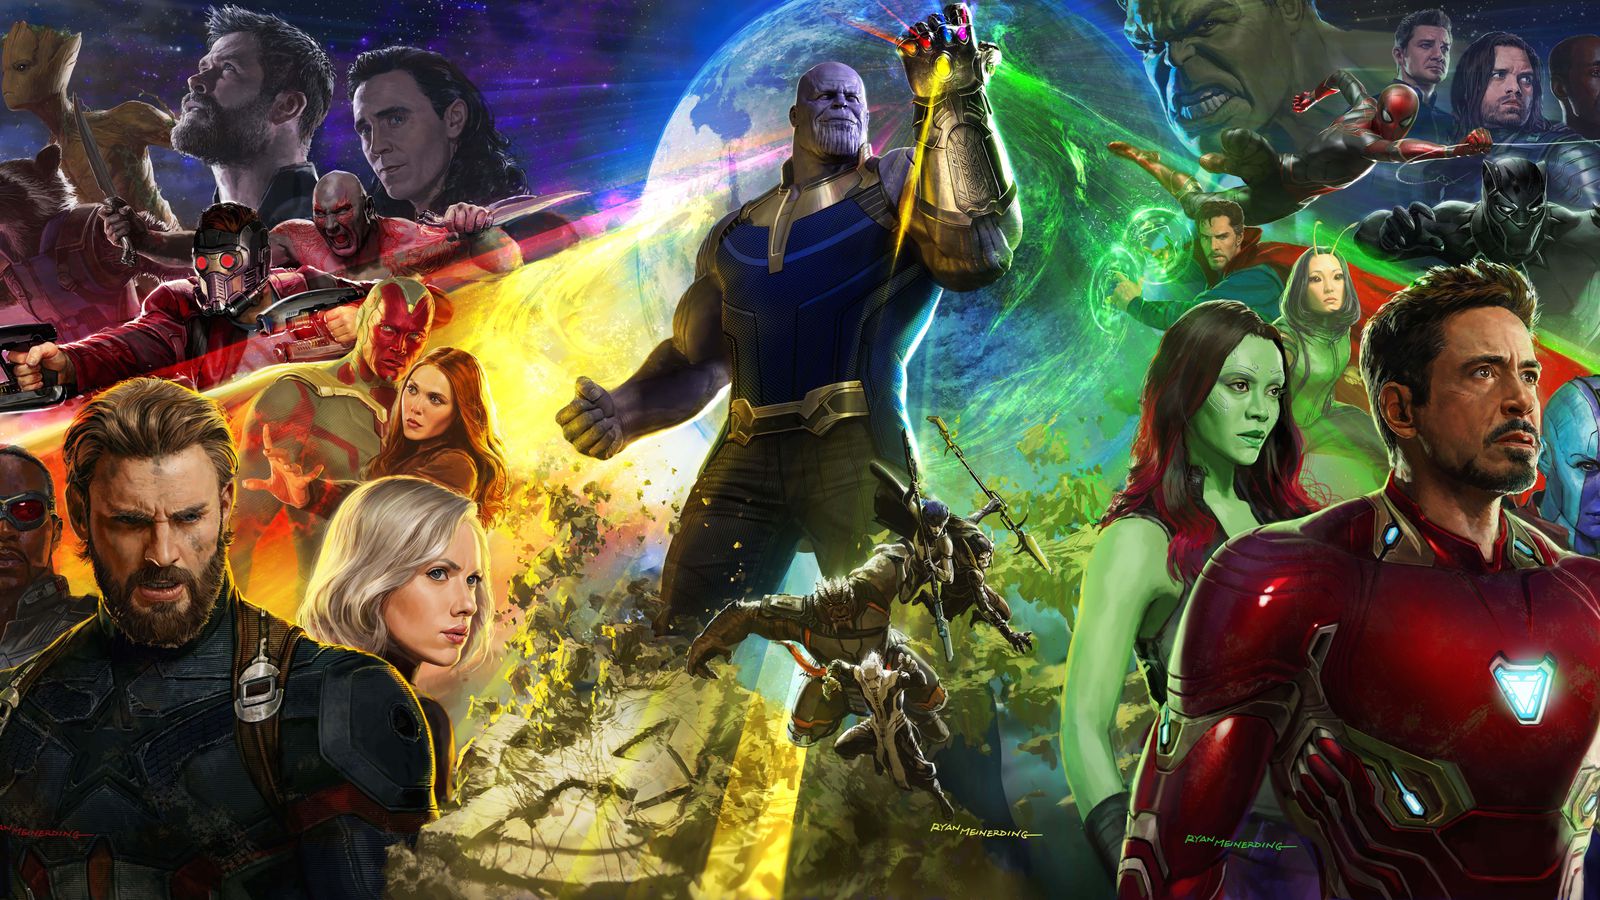 ดูหนัง Avengers และฮีโร่ซีรีส์อย่างไรให้ถูกต้อง ต่อเรื่องราวให้ได้สมบูรณ์และรู้เรื่องที่สุด!